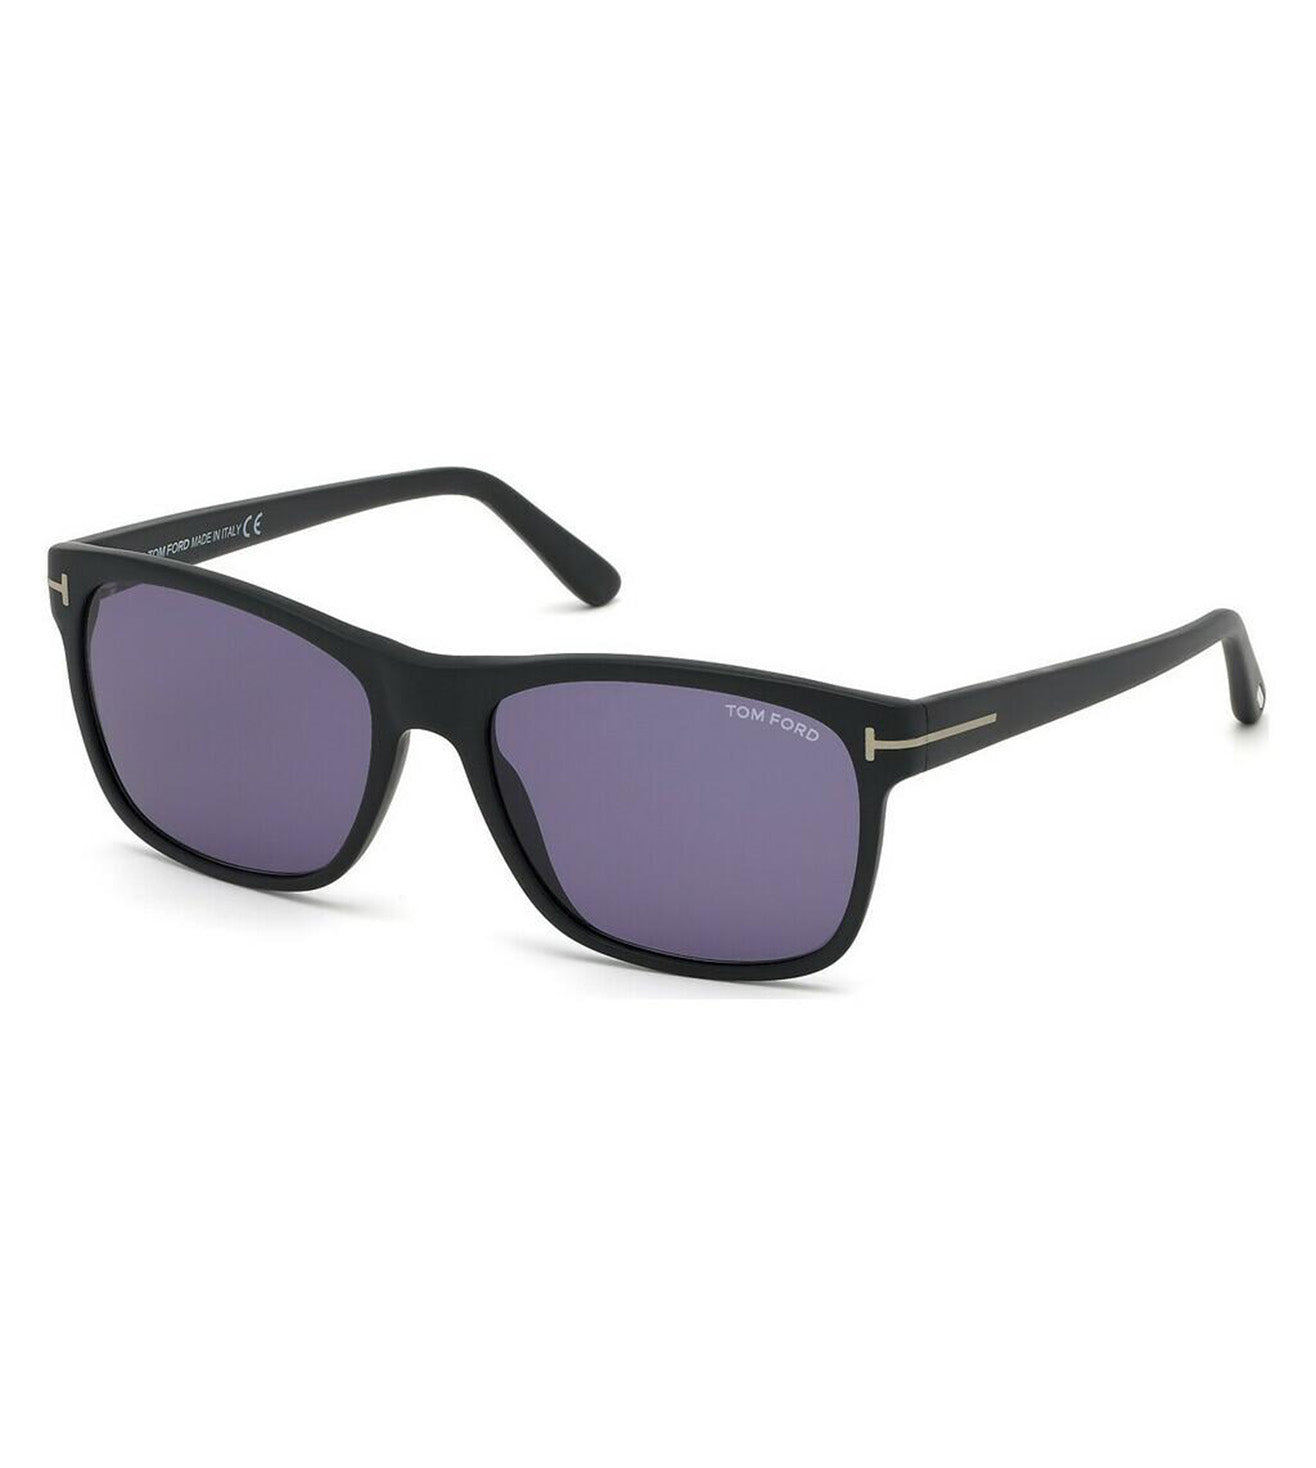 Tom Ford Men's Blue Rectangular Sunglasses